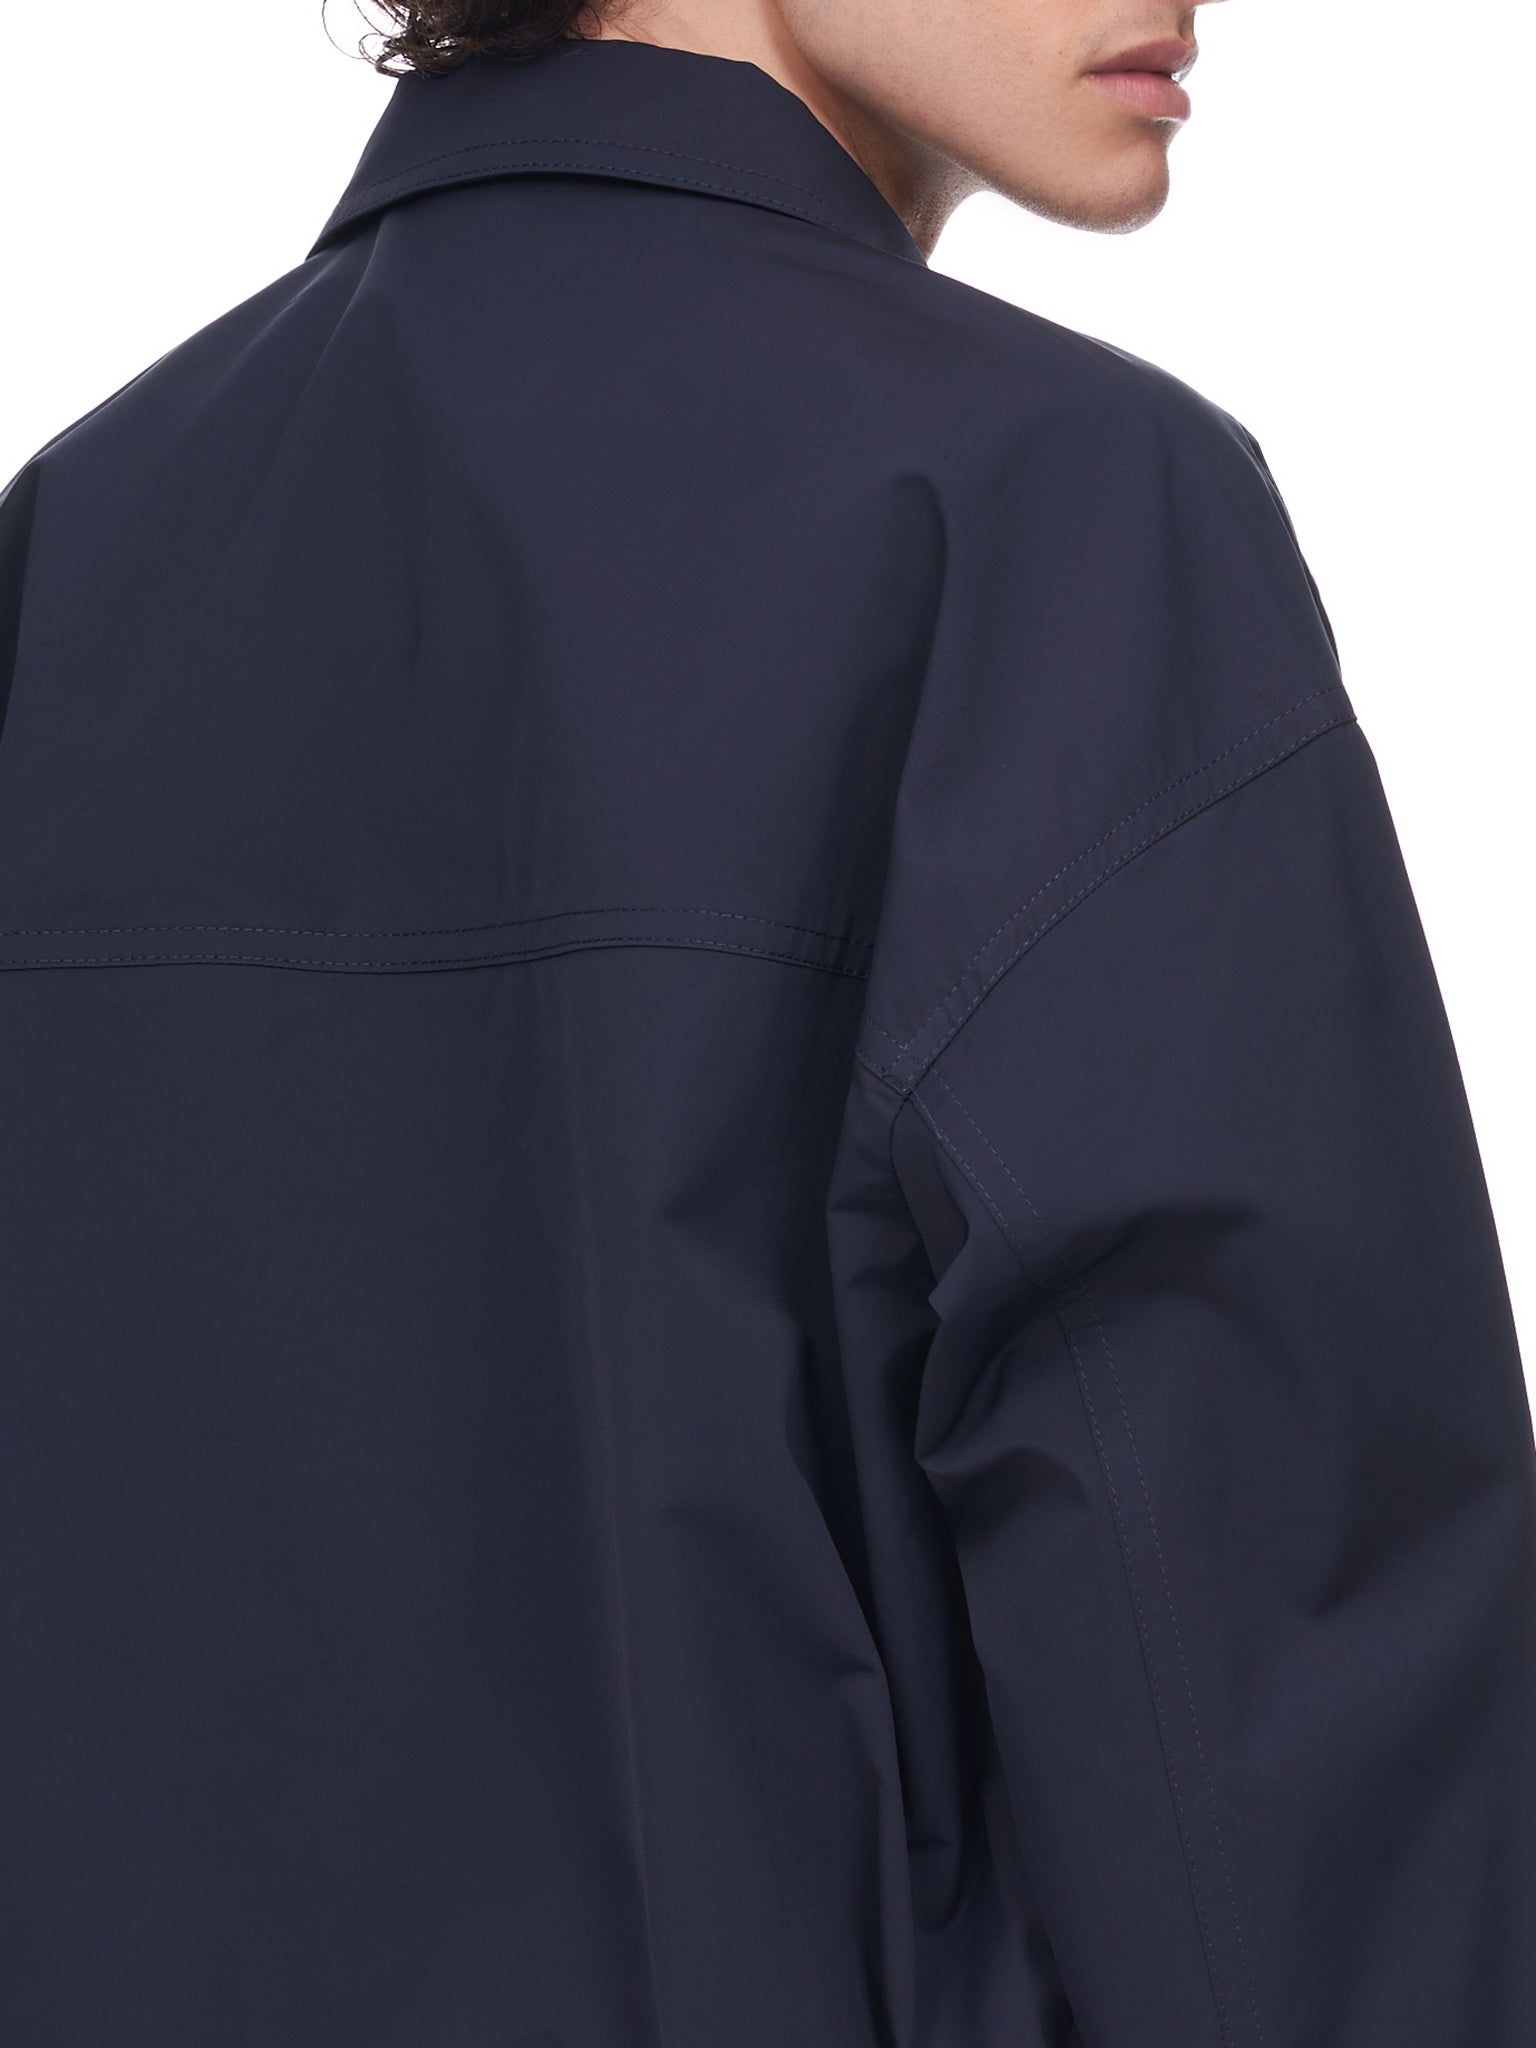 Nanushka Beno Jacket | H.Lorenzo - detail 2